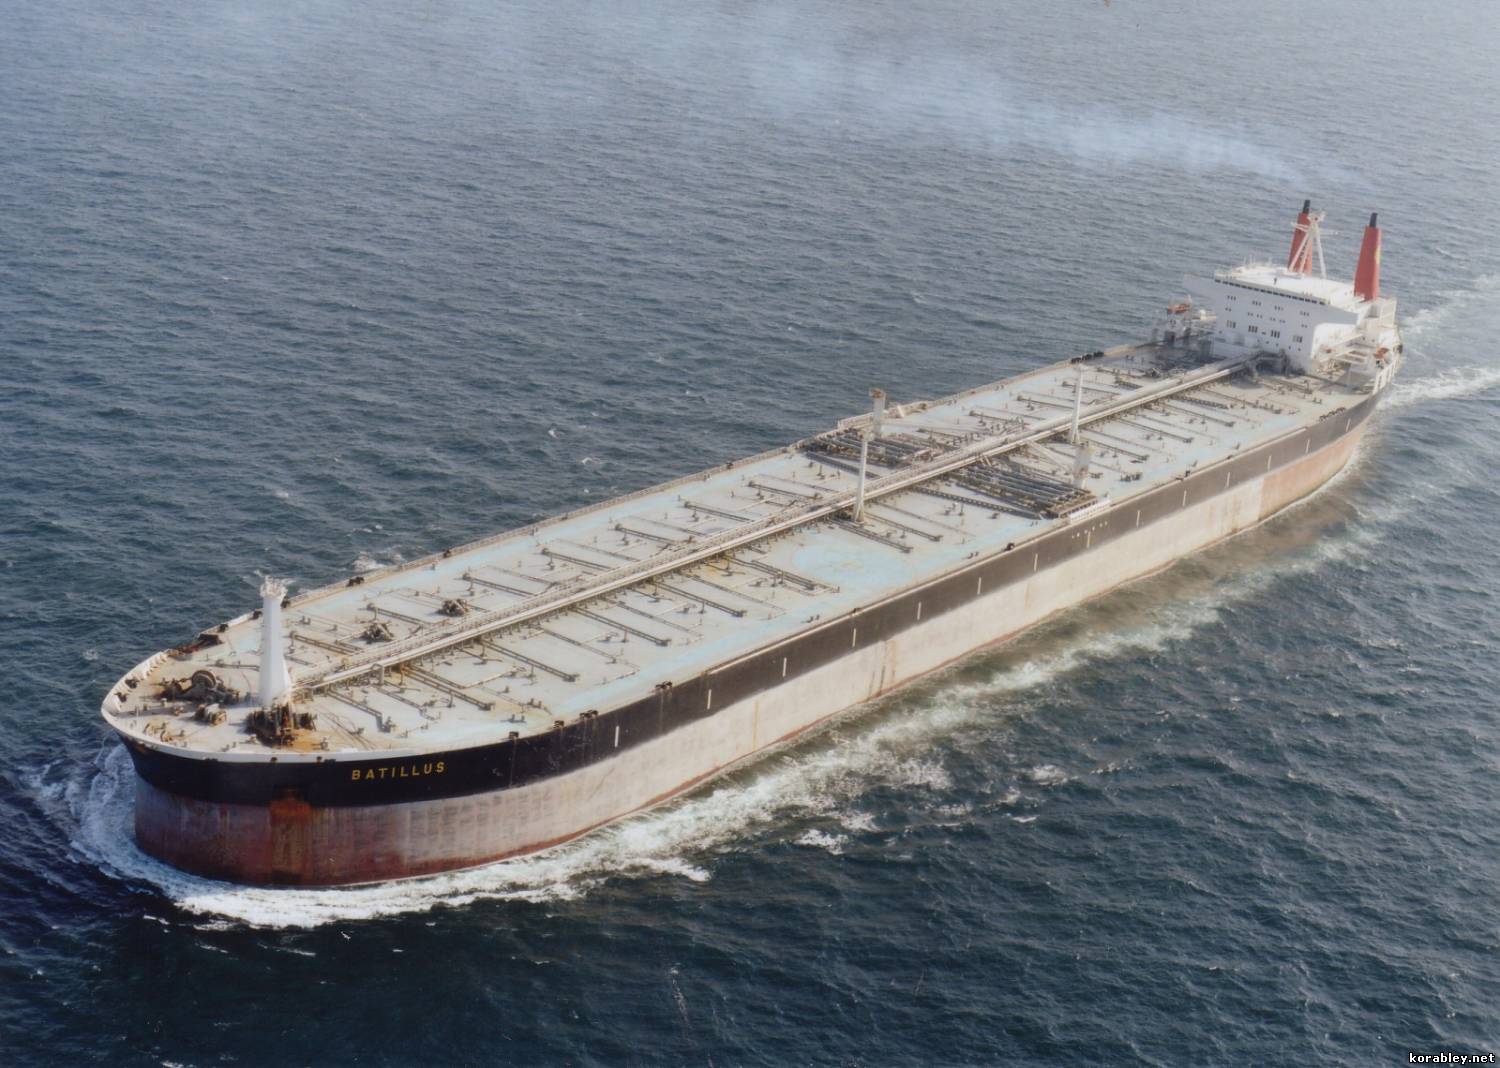 Самый большой танкер в мире «Batillus». История гиганта